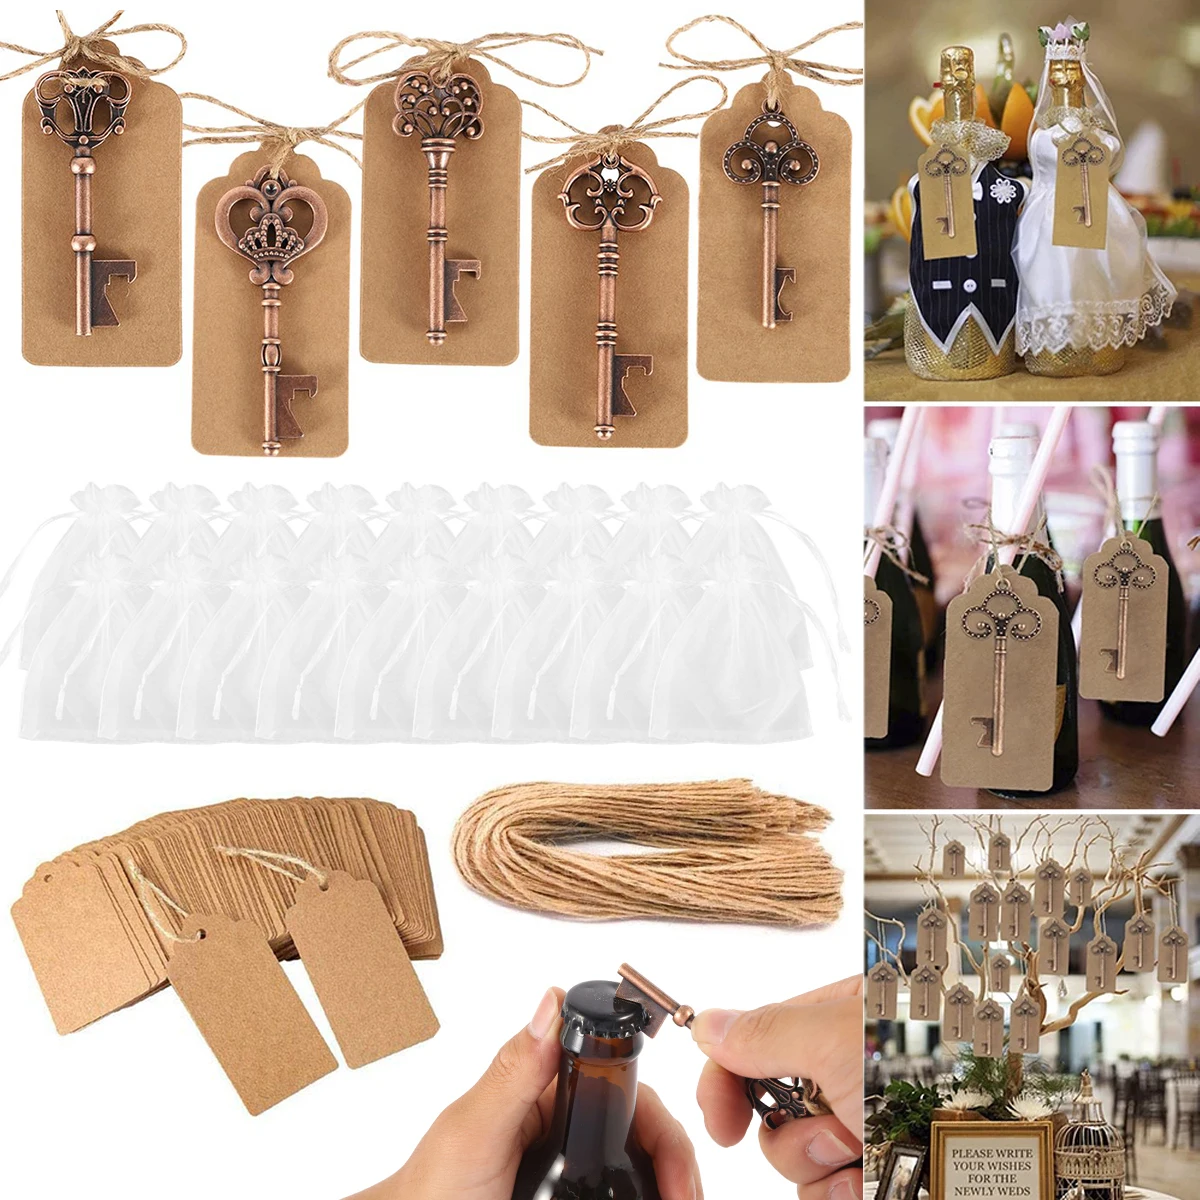 

30Pcs Vintage Key Bottle Opener Kit Wedding Favor Skeleton Key Opener with Paperboard Tag Card for Party Wedding Decoration